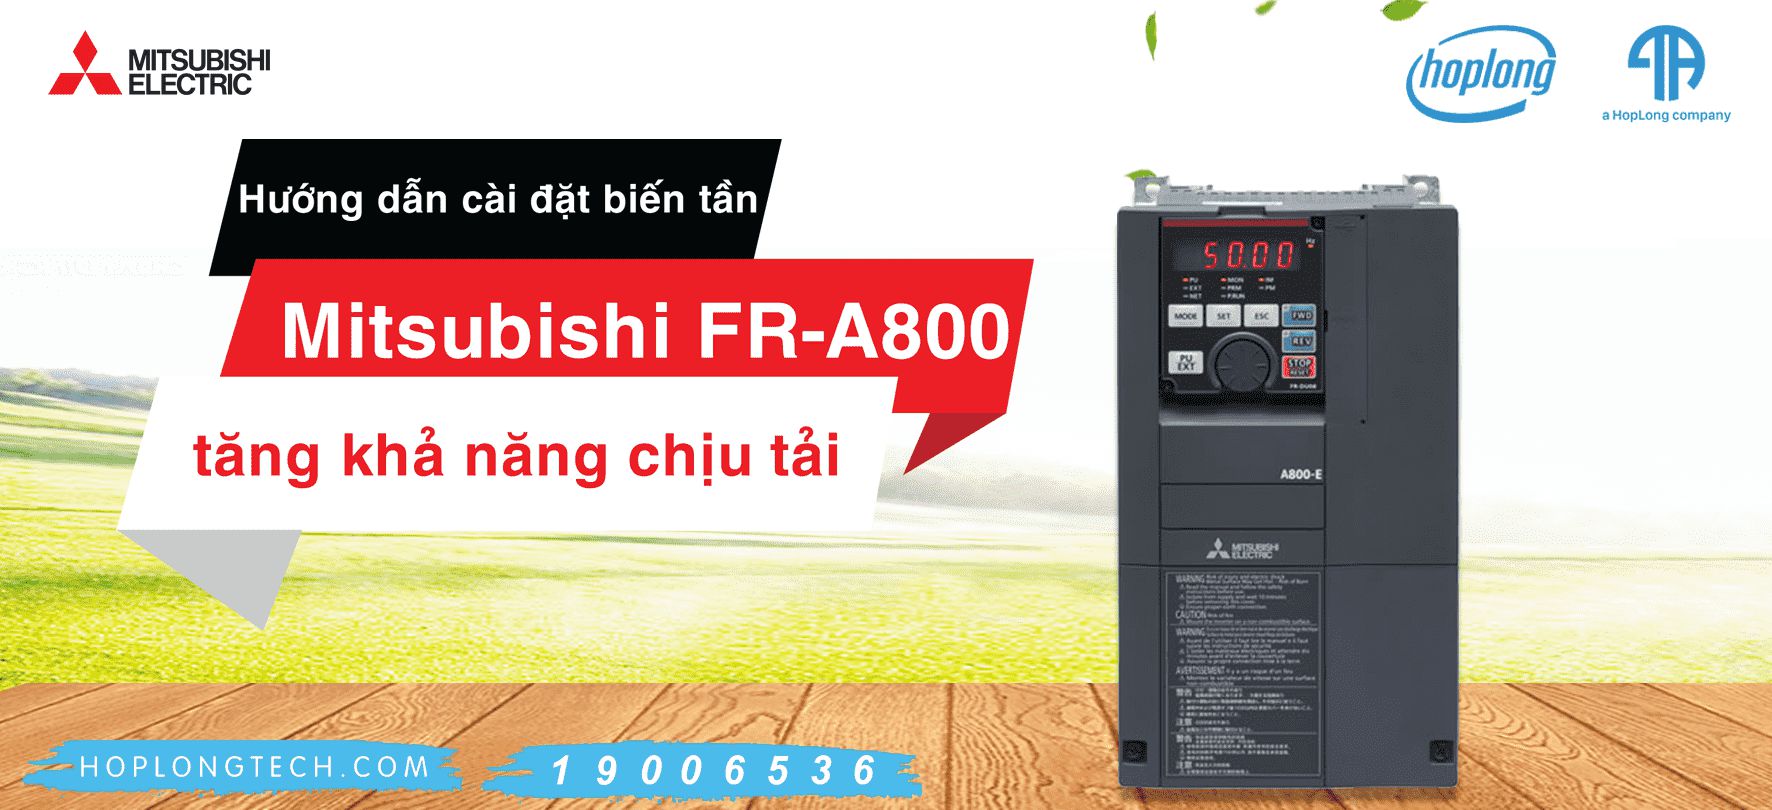 [Mitsubishi-Hướng Dẫn] Hướng dẫn cài đặt biến tần Mitsubishi FR-A800 tăng khả năng chịu tải